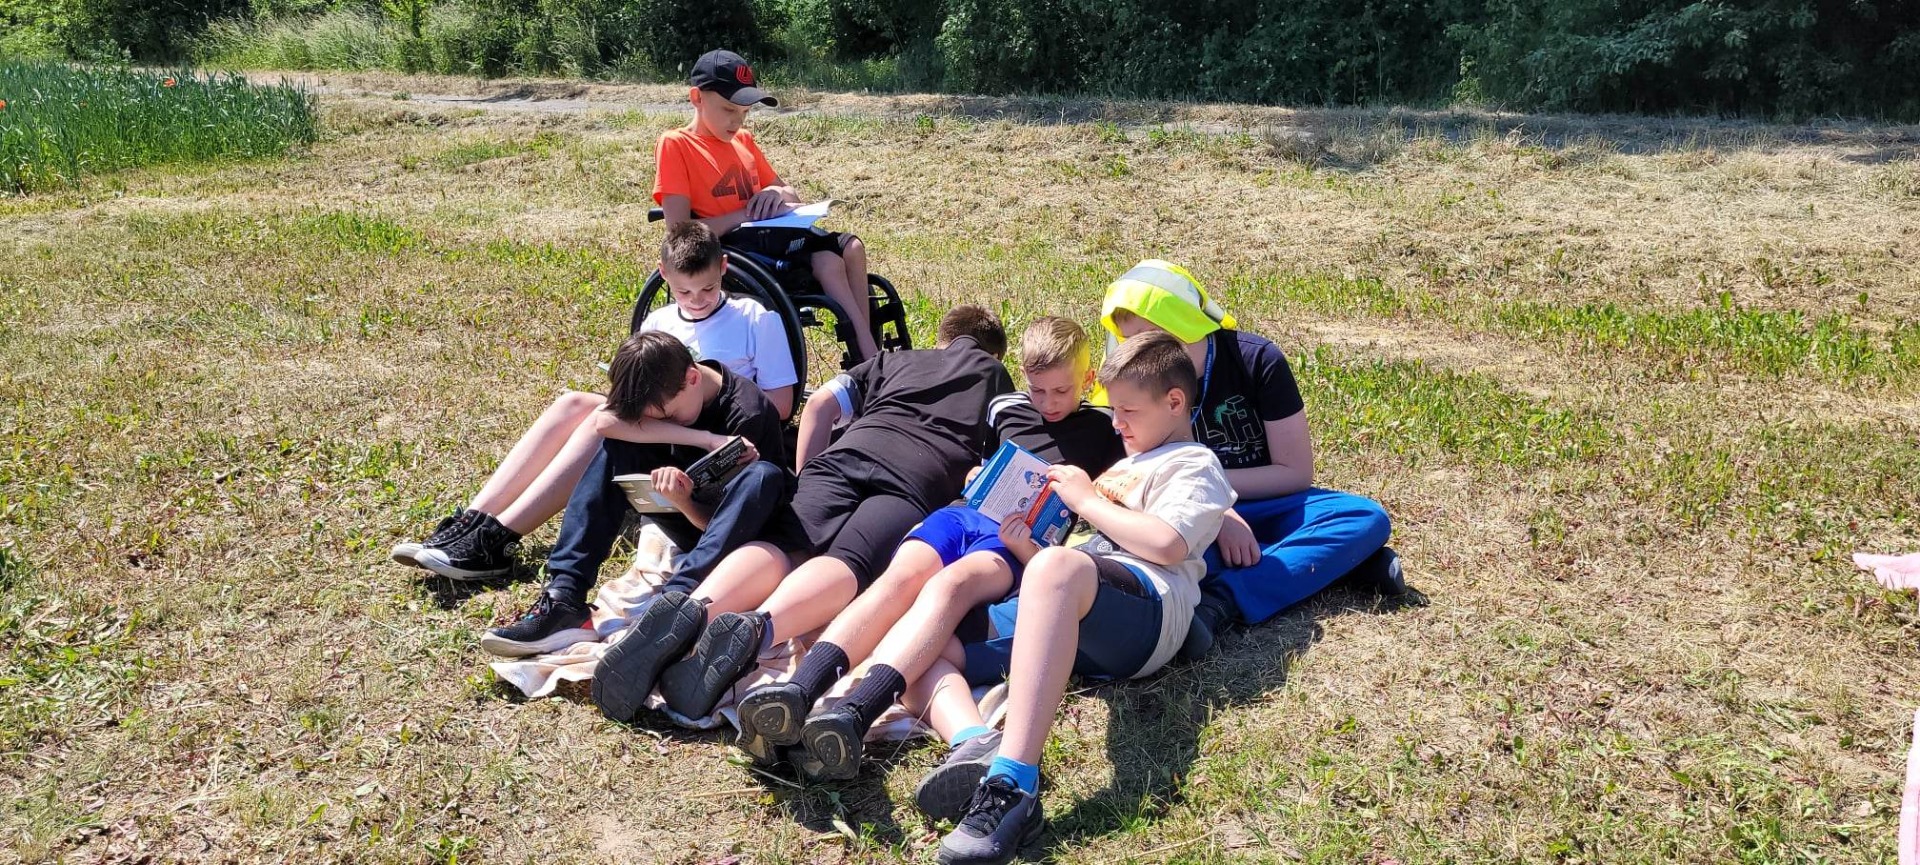 Uczniowie czytają książki na kocach na świeżym powietrzu.